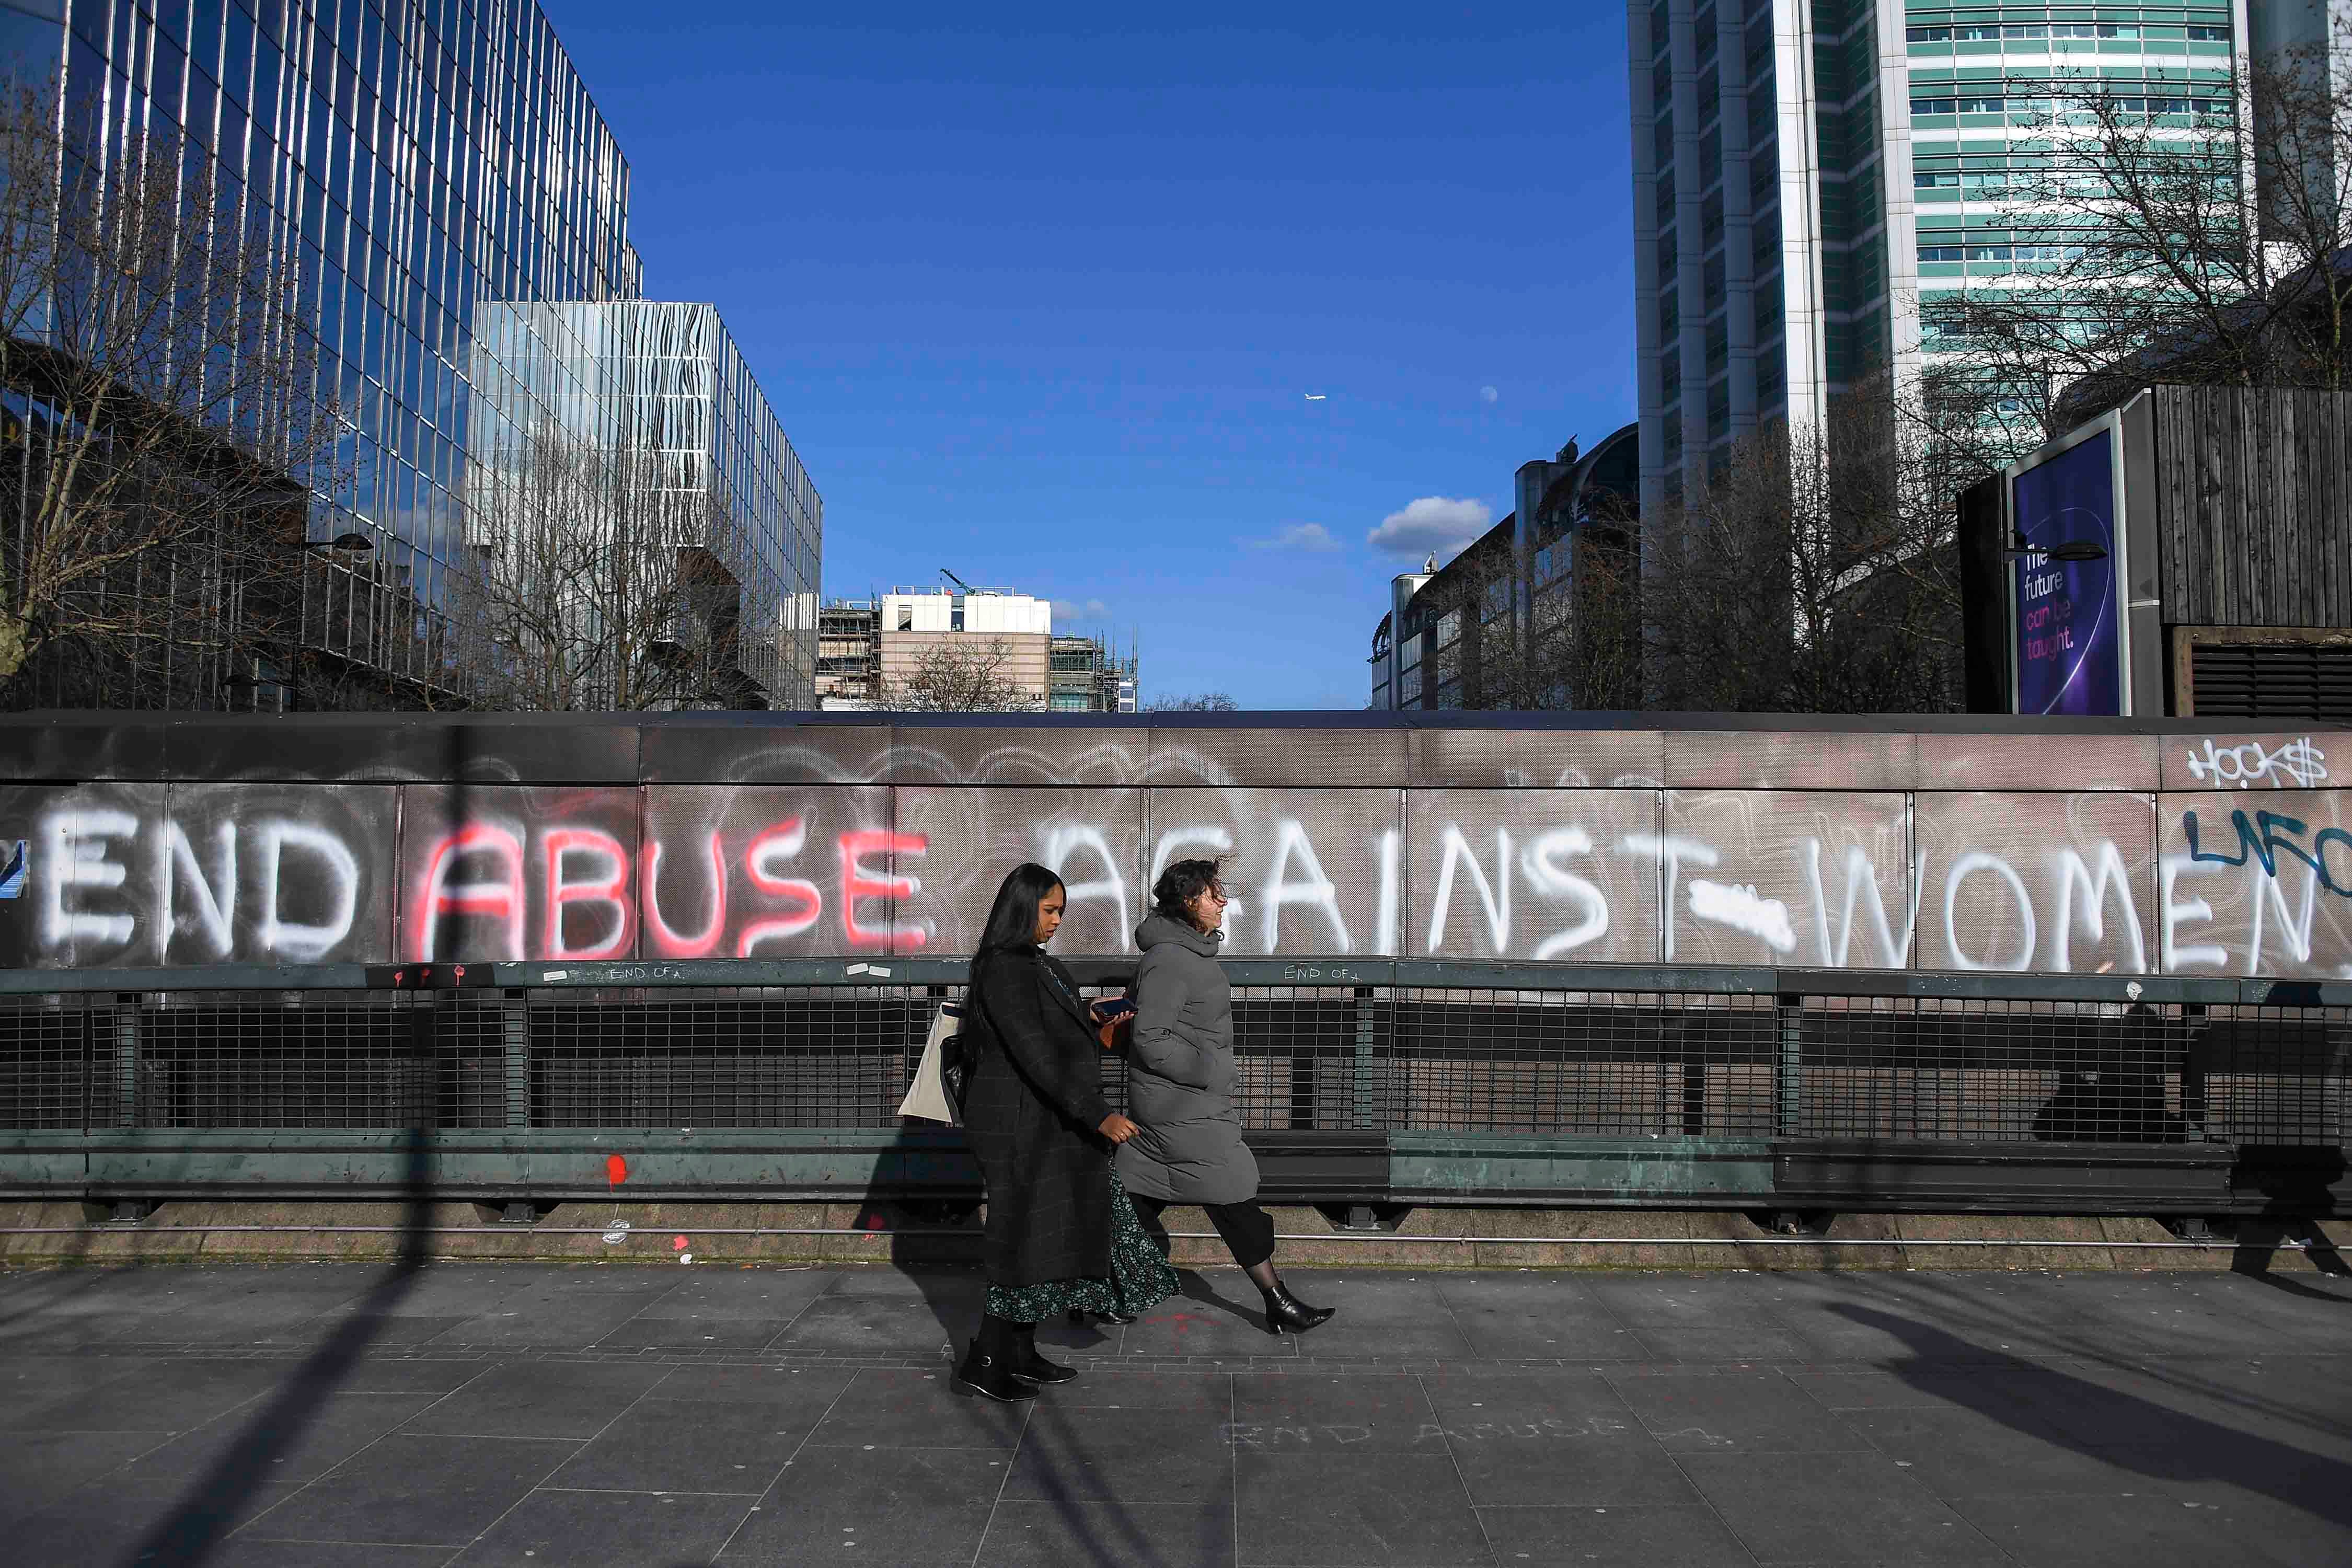 عبارة "أوقفوا العنف ضد النساء" مكتوبة على جدار في شارع يوستون في لندن، وتظهر في الصورة امرأتان تمران بجانب الجدار، الجمعة 6 مارس/آذار 2020. 